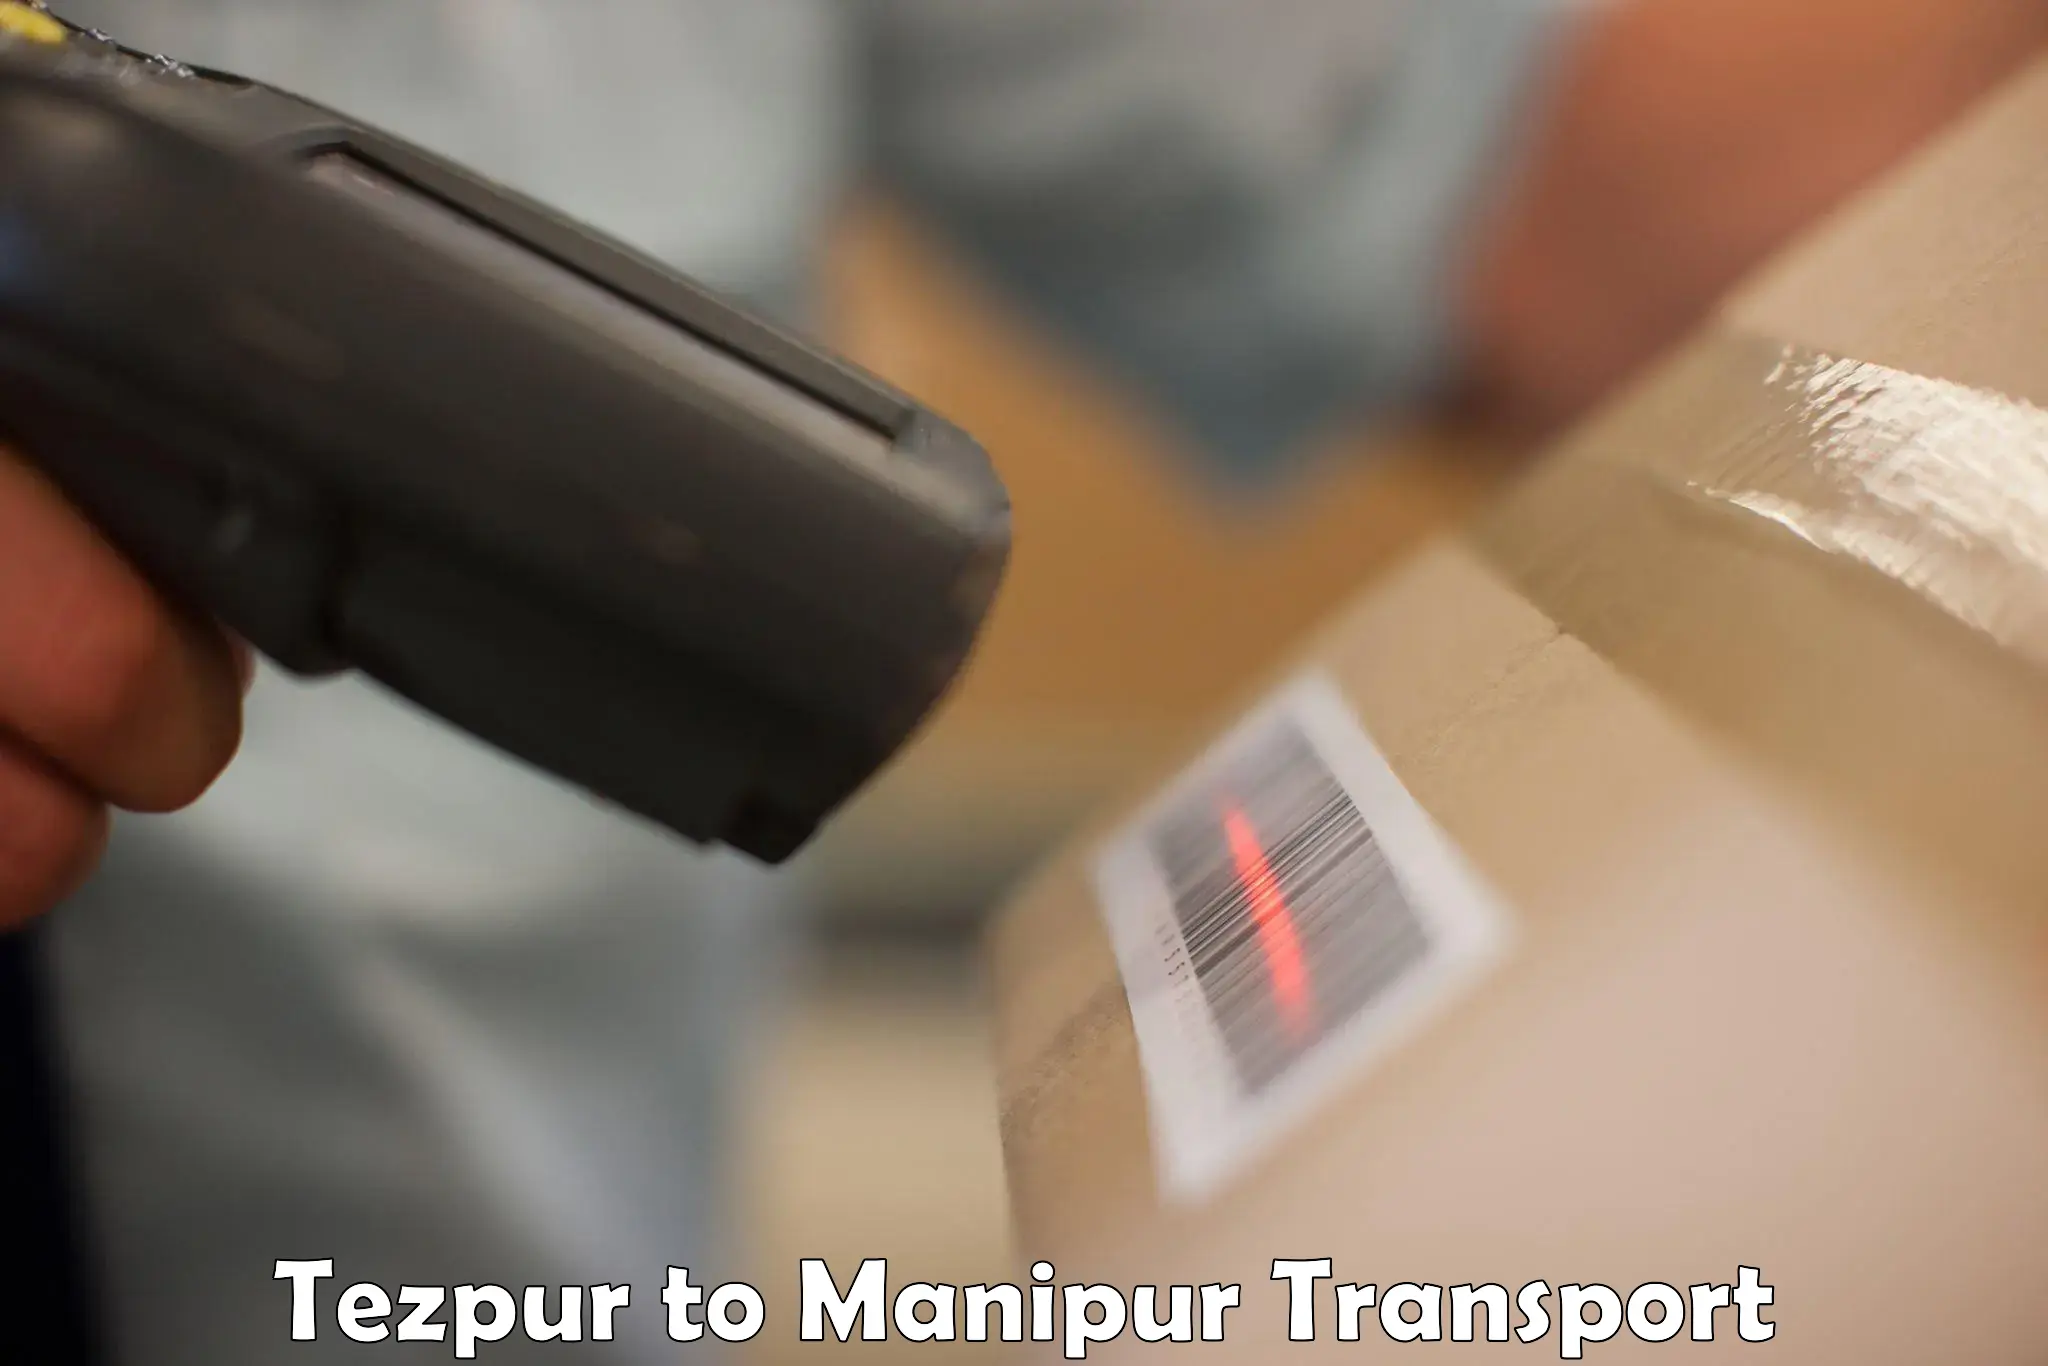 Pick up transport service Tezpur to Senapati